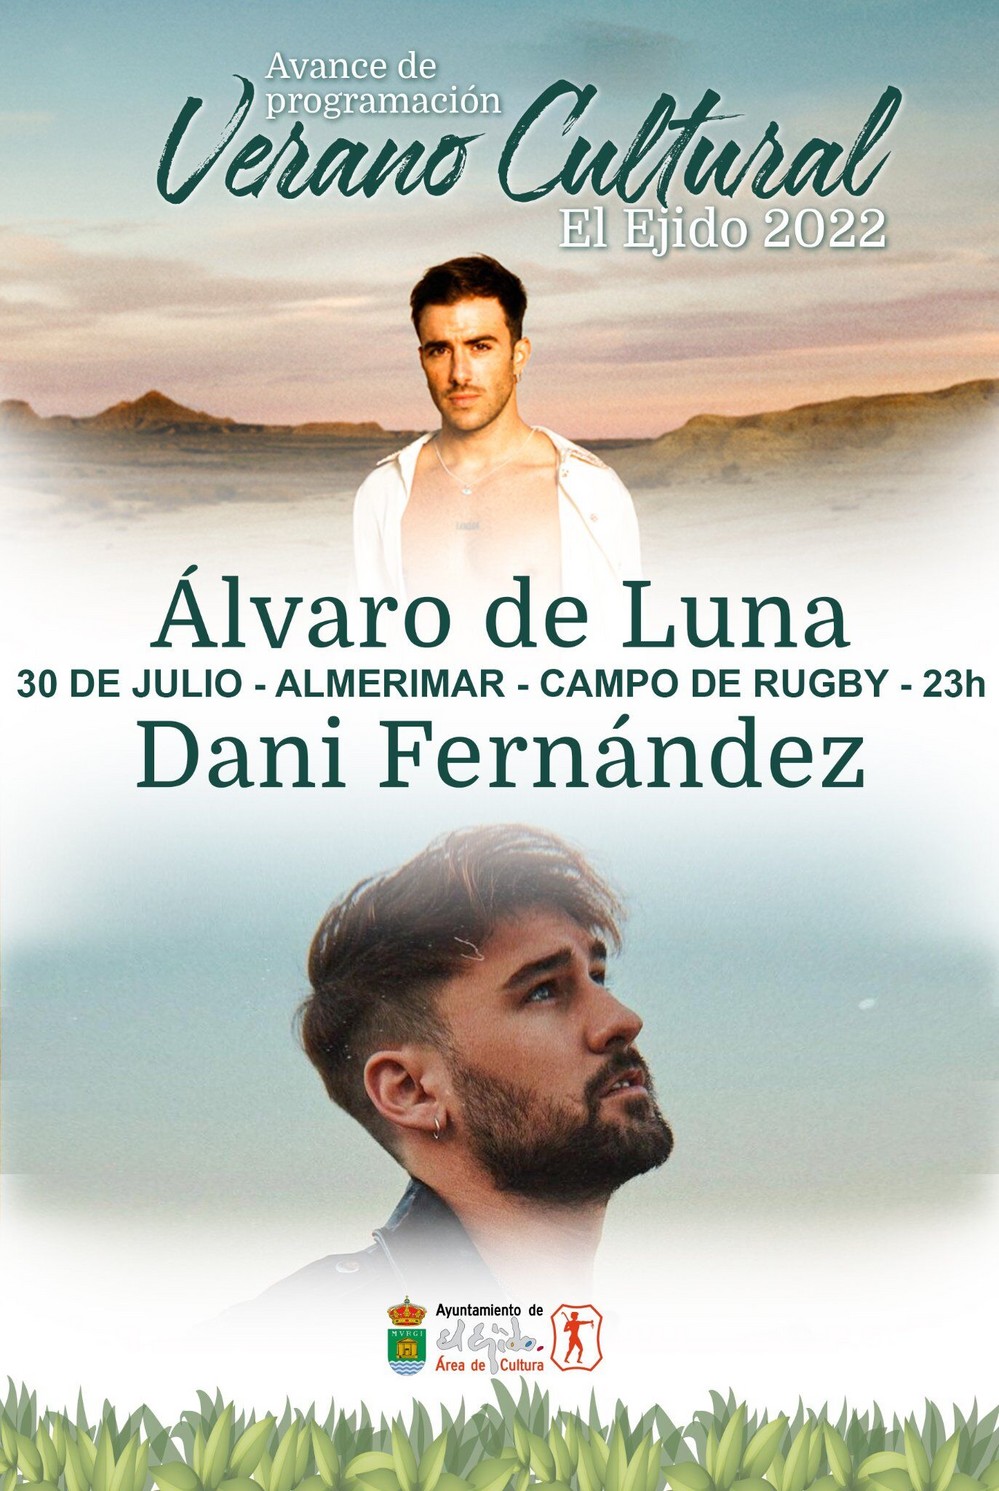 Álvaro de Luna y Dani Fernández en concierto el 30 de julio en Almerimar